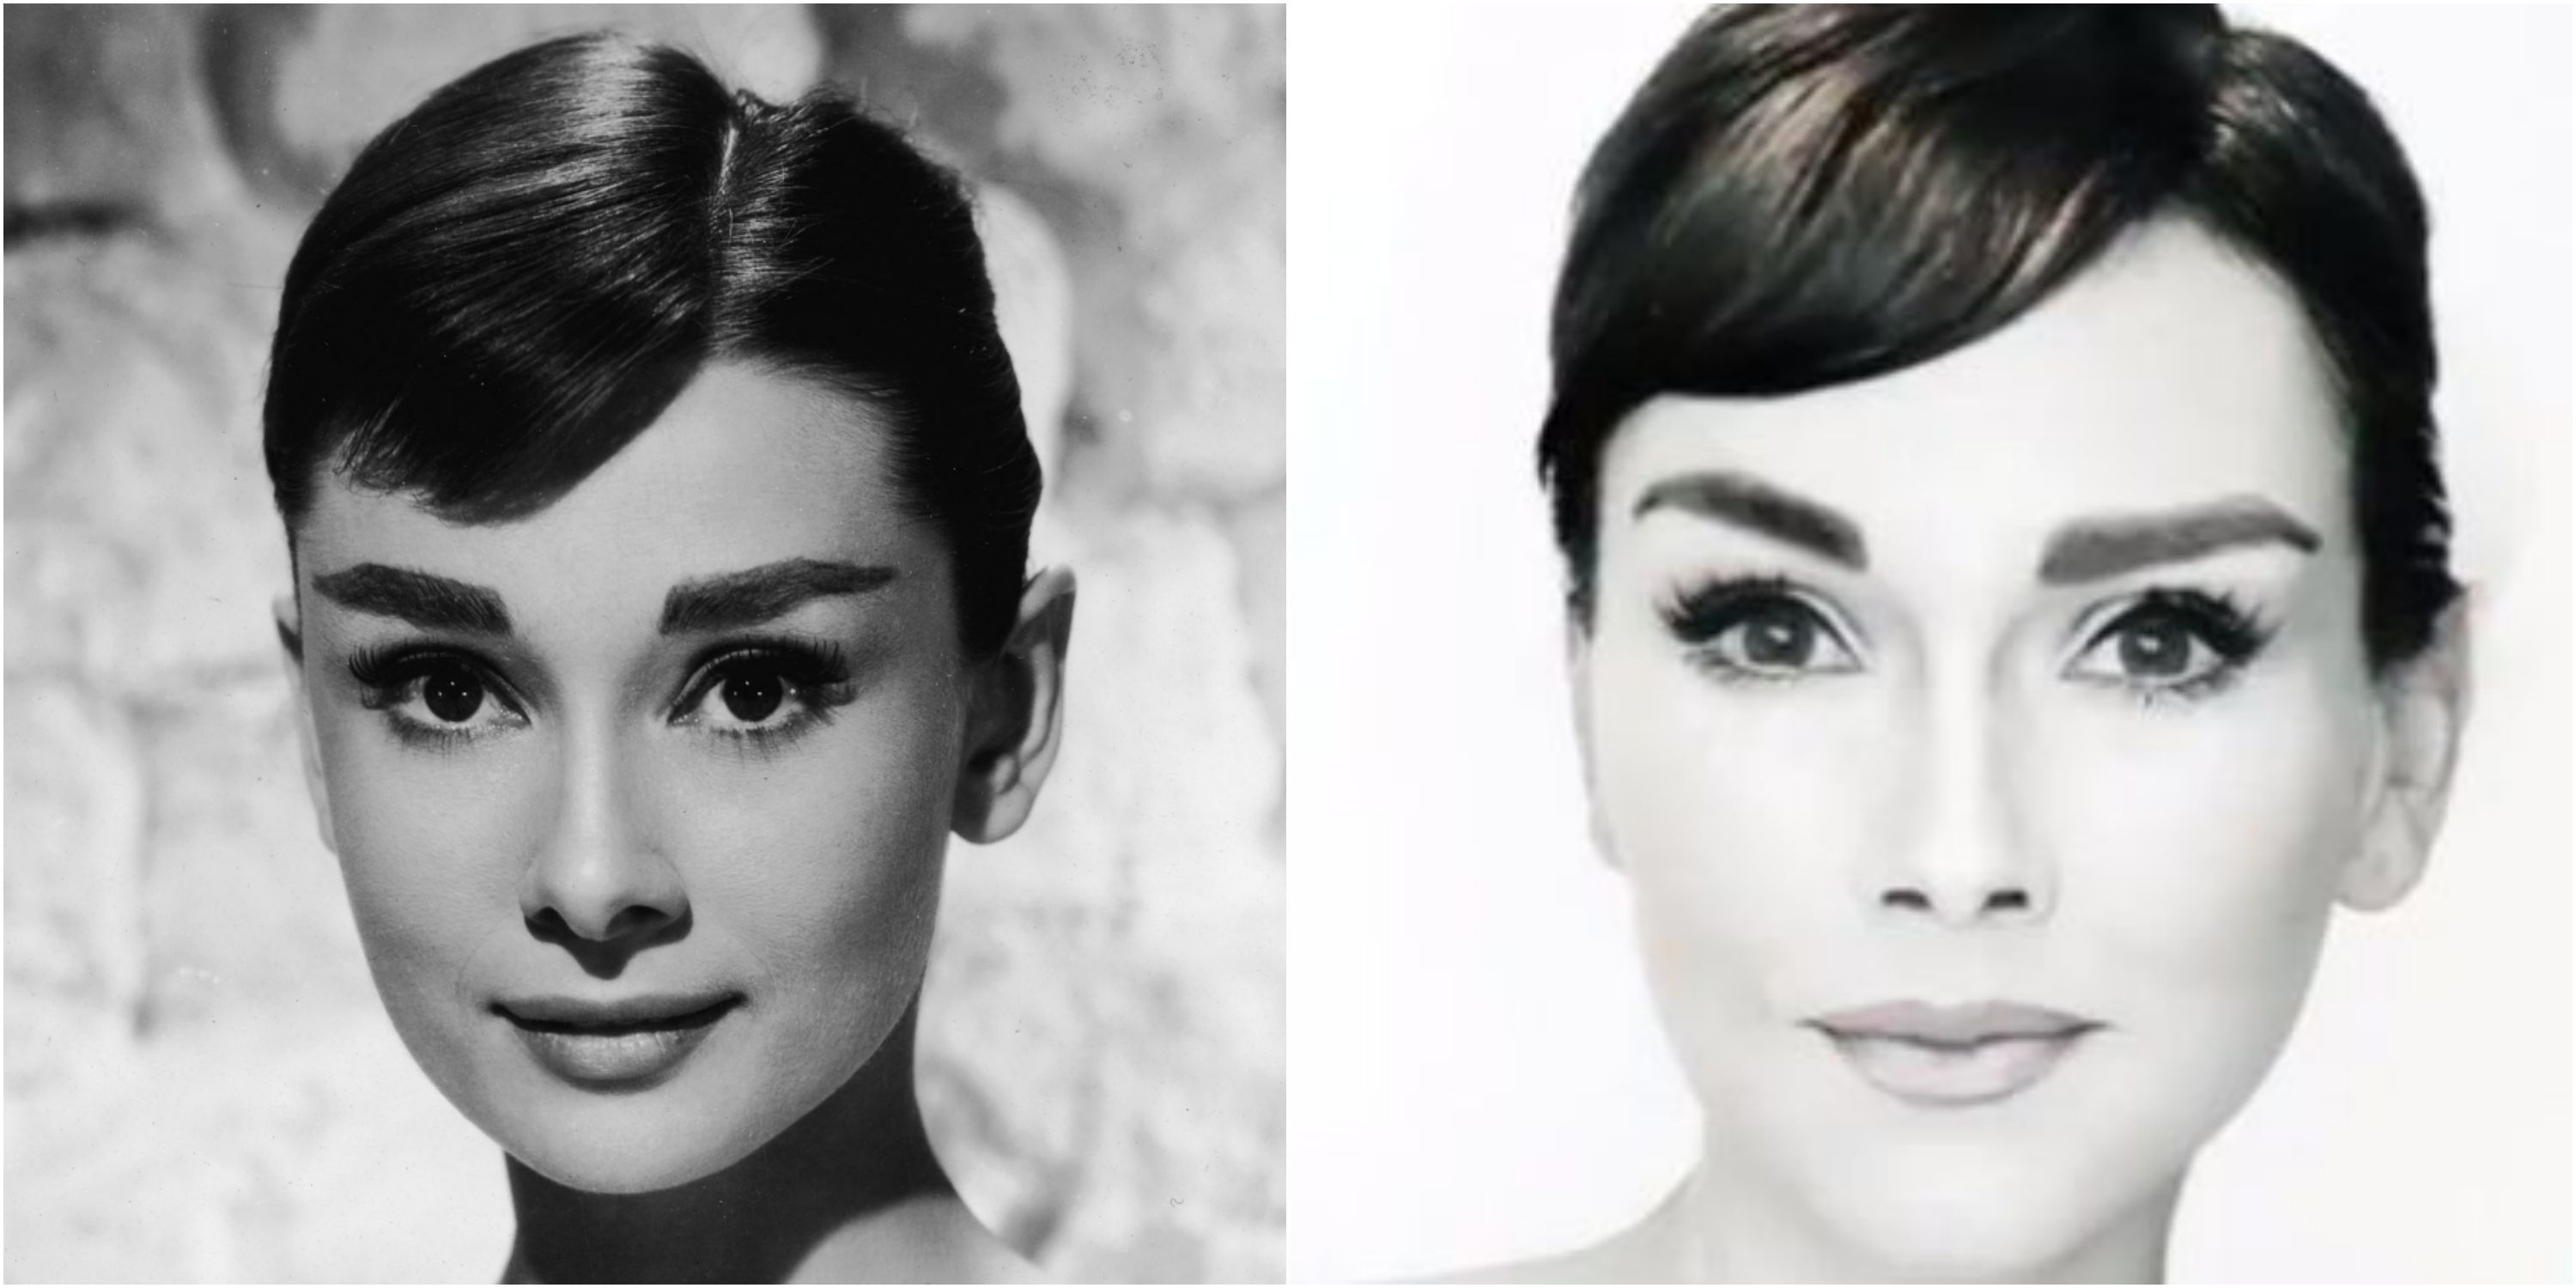 Audrey Hepburn Makeup Transformation - How to Do Audrey Hepburn's ...